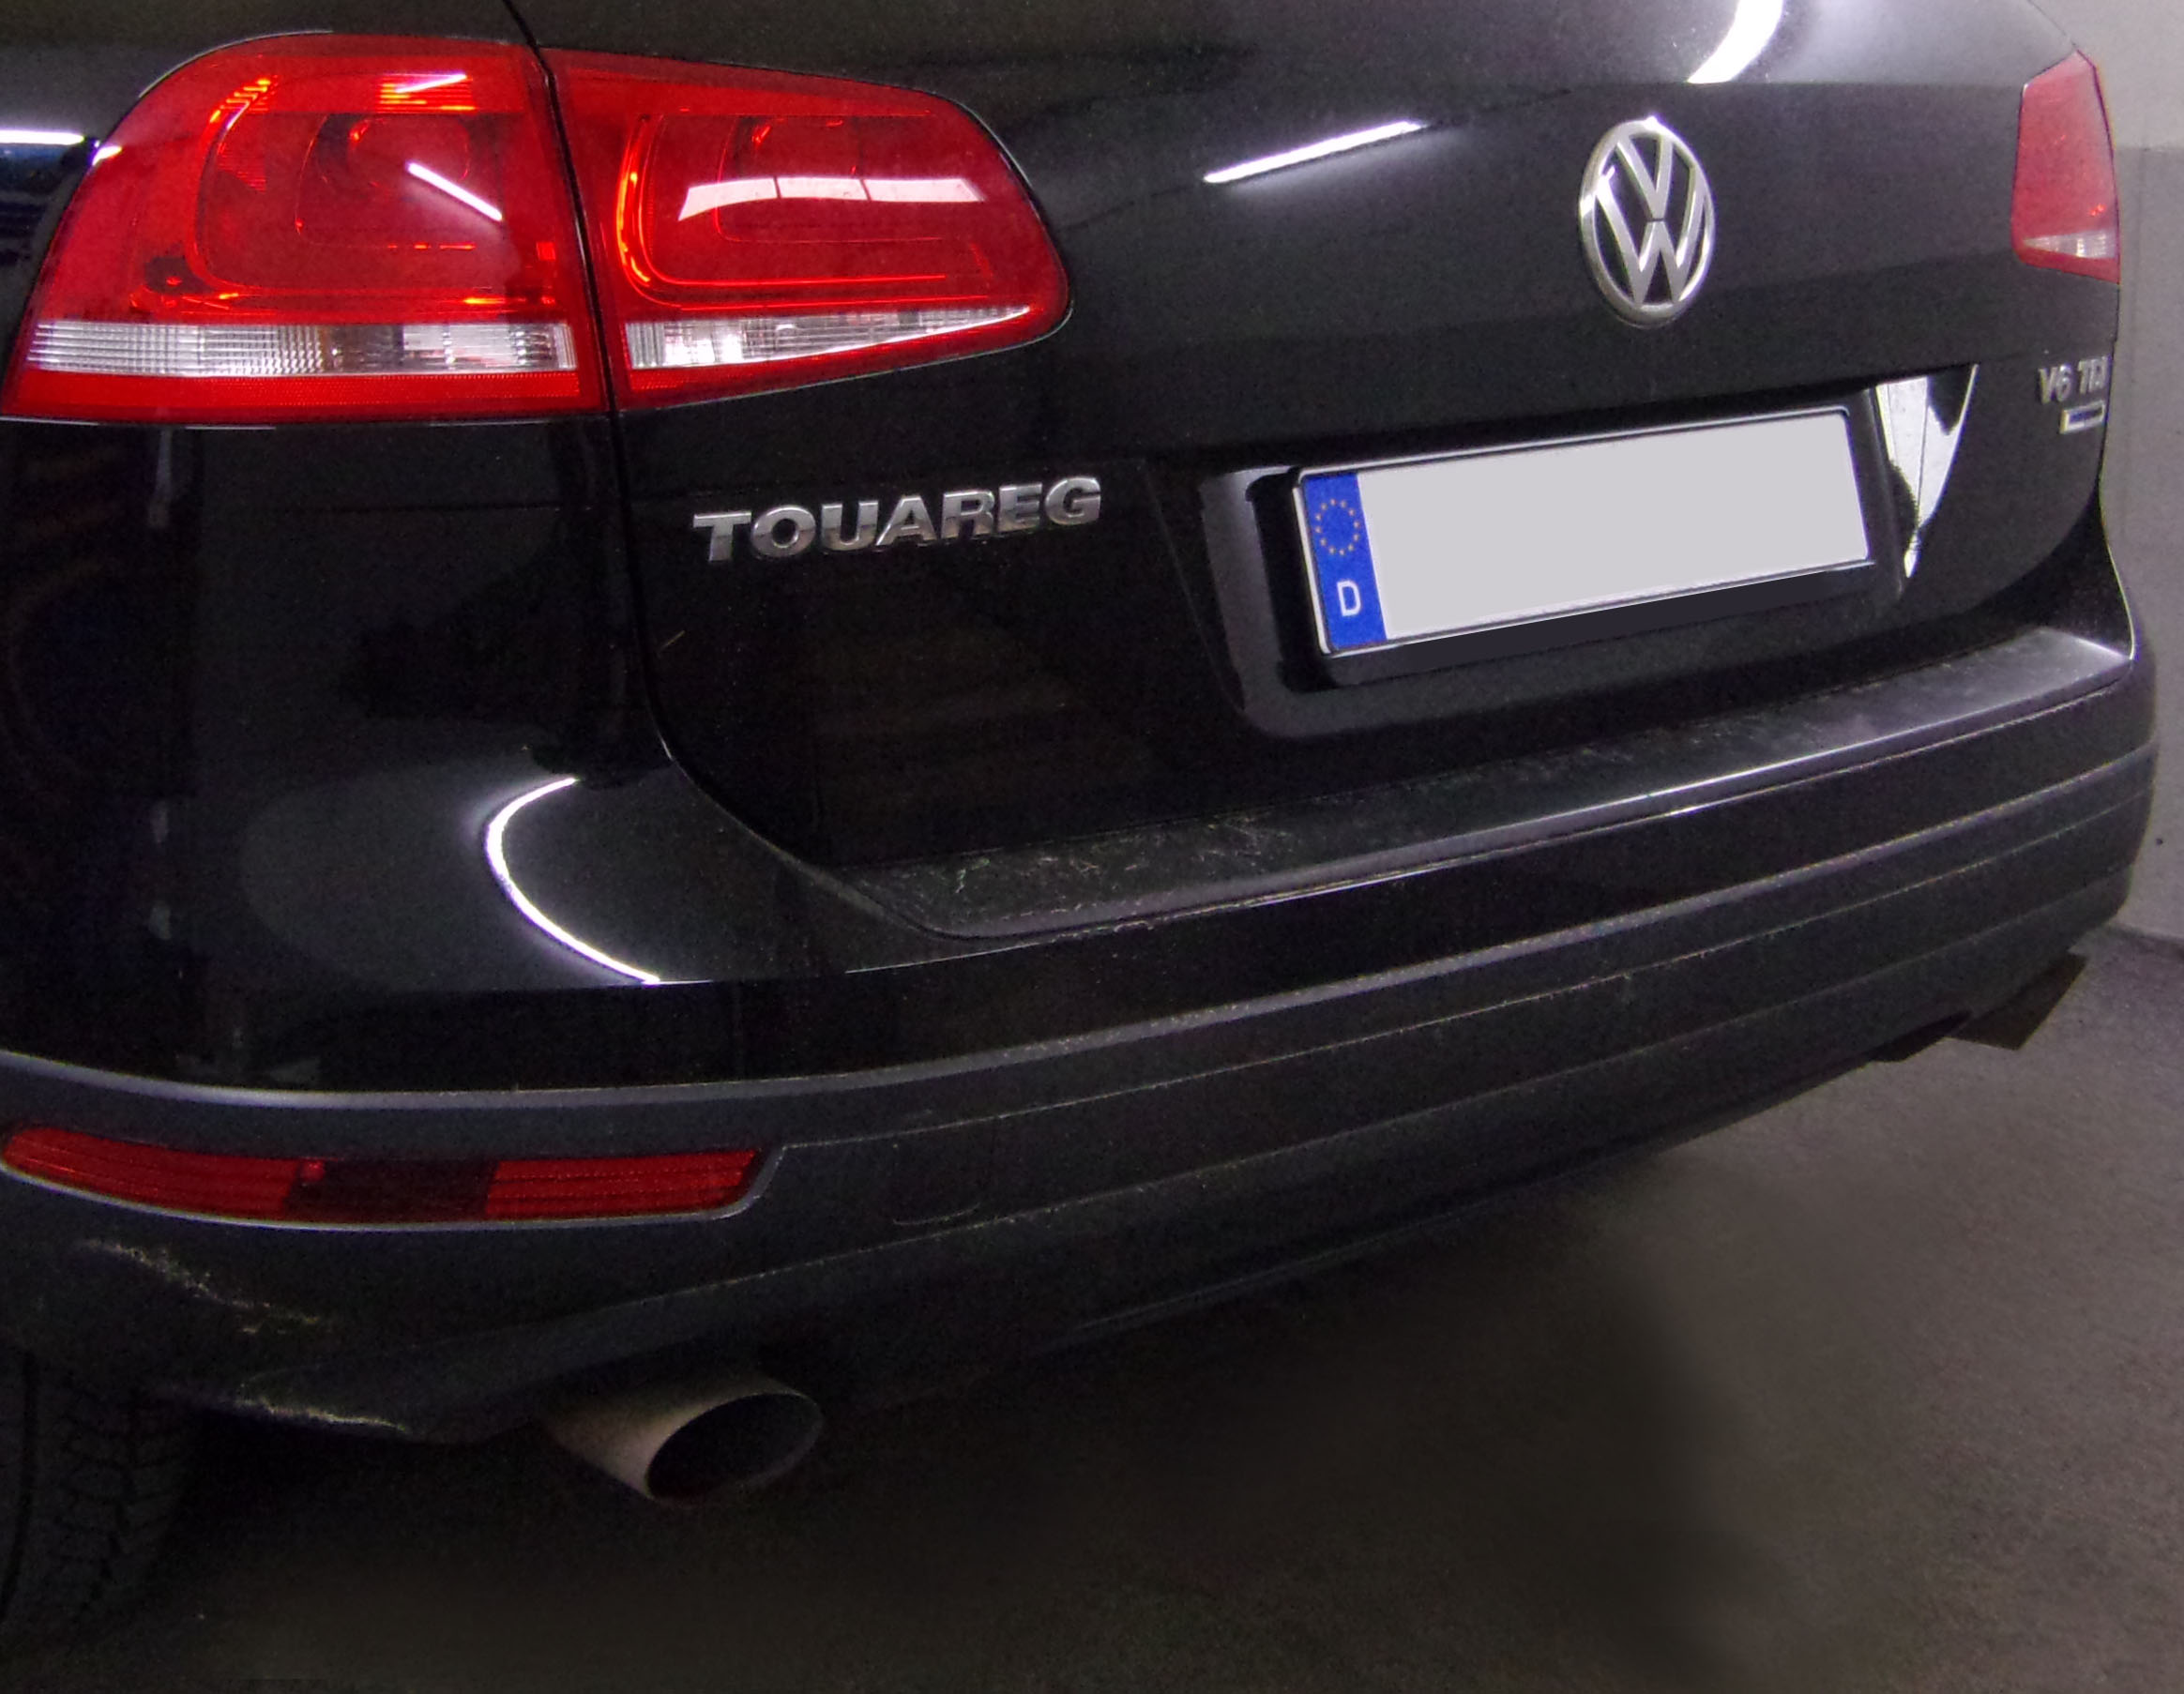 Anhängerkupplung für VW Touareg f. Fzg. m. Reserverad am Boden 2010-2017 - starr